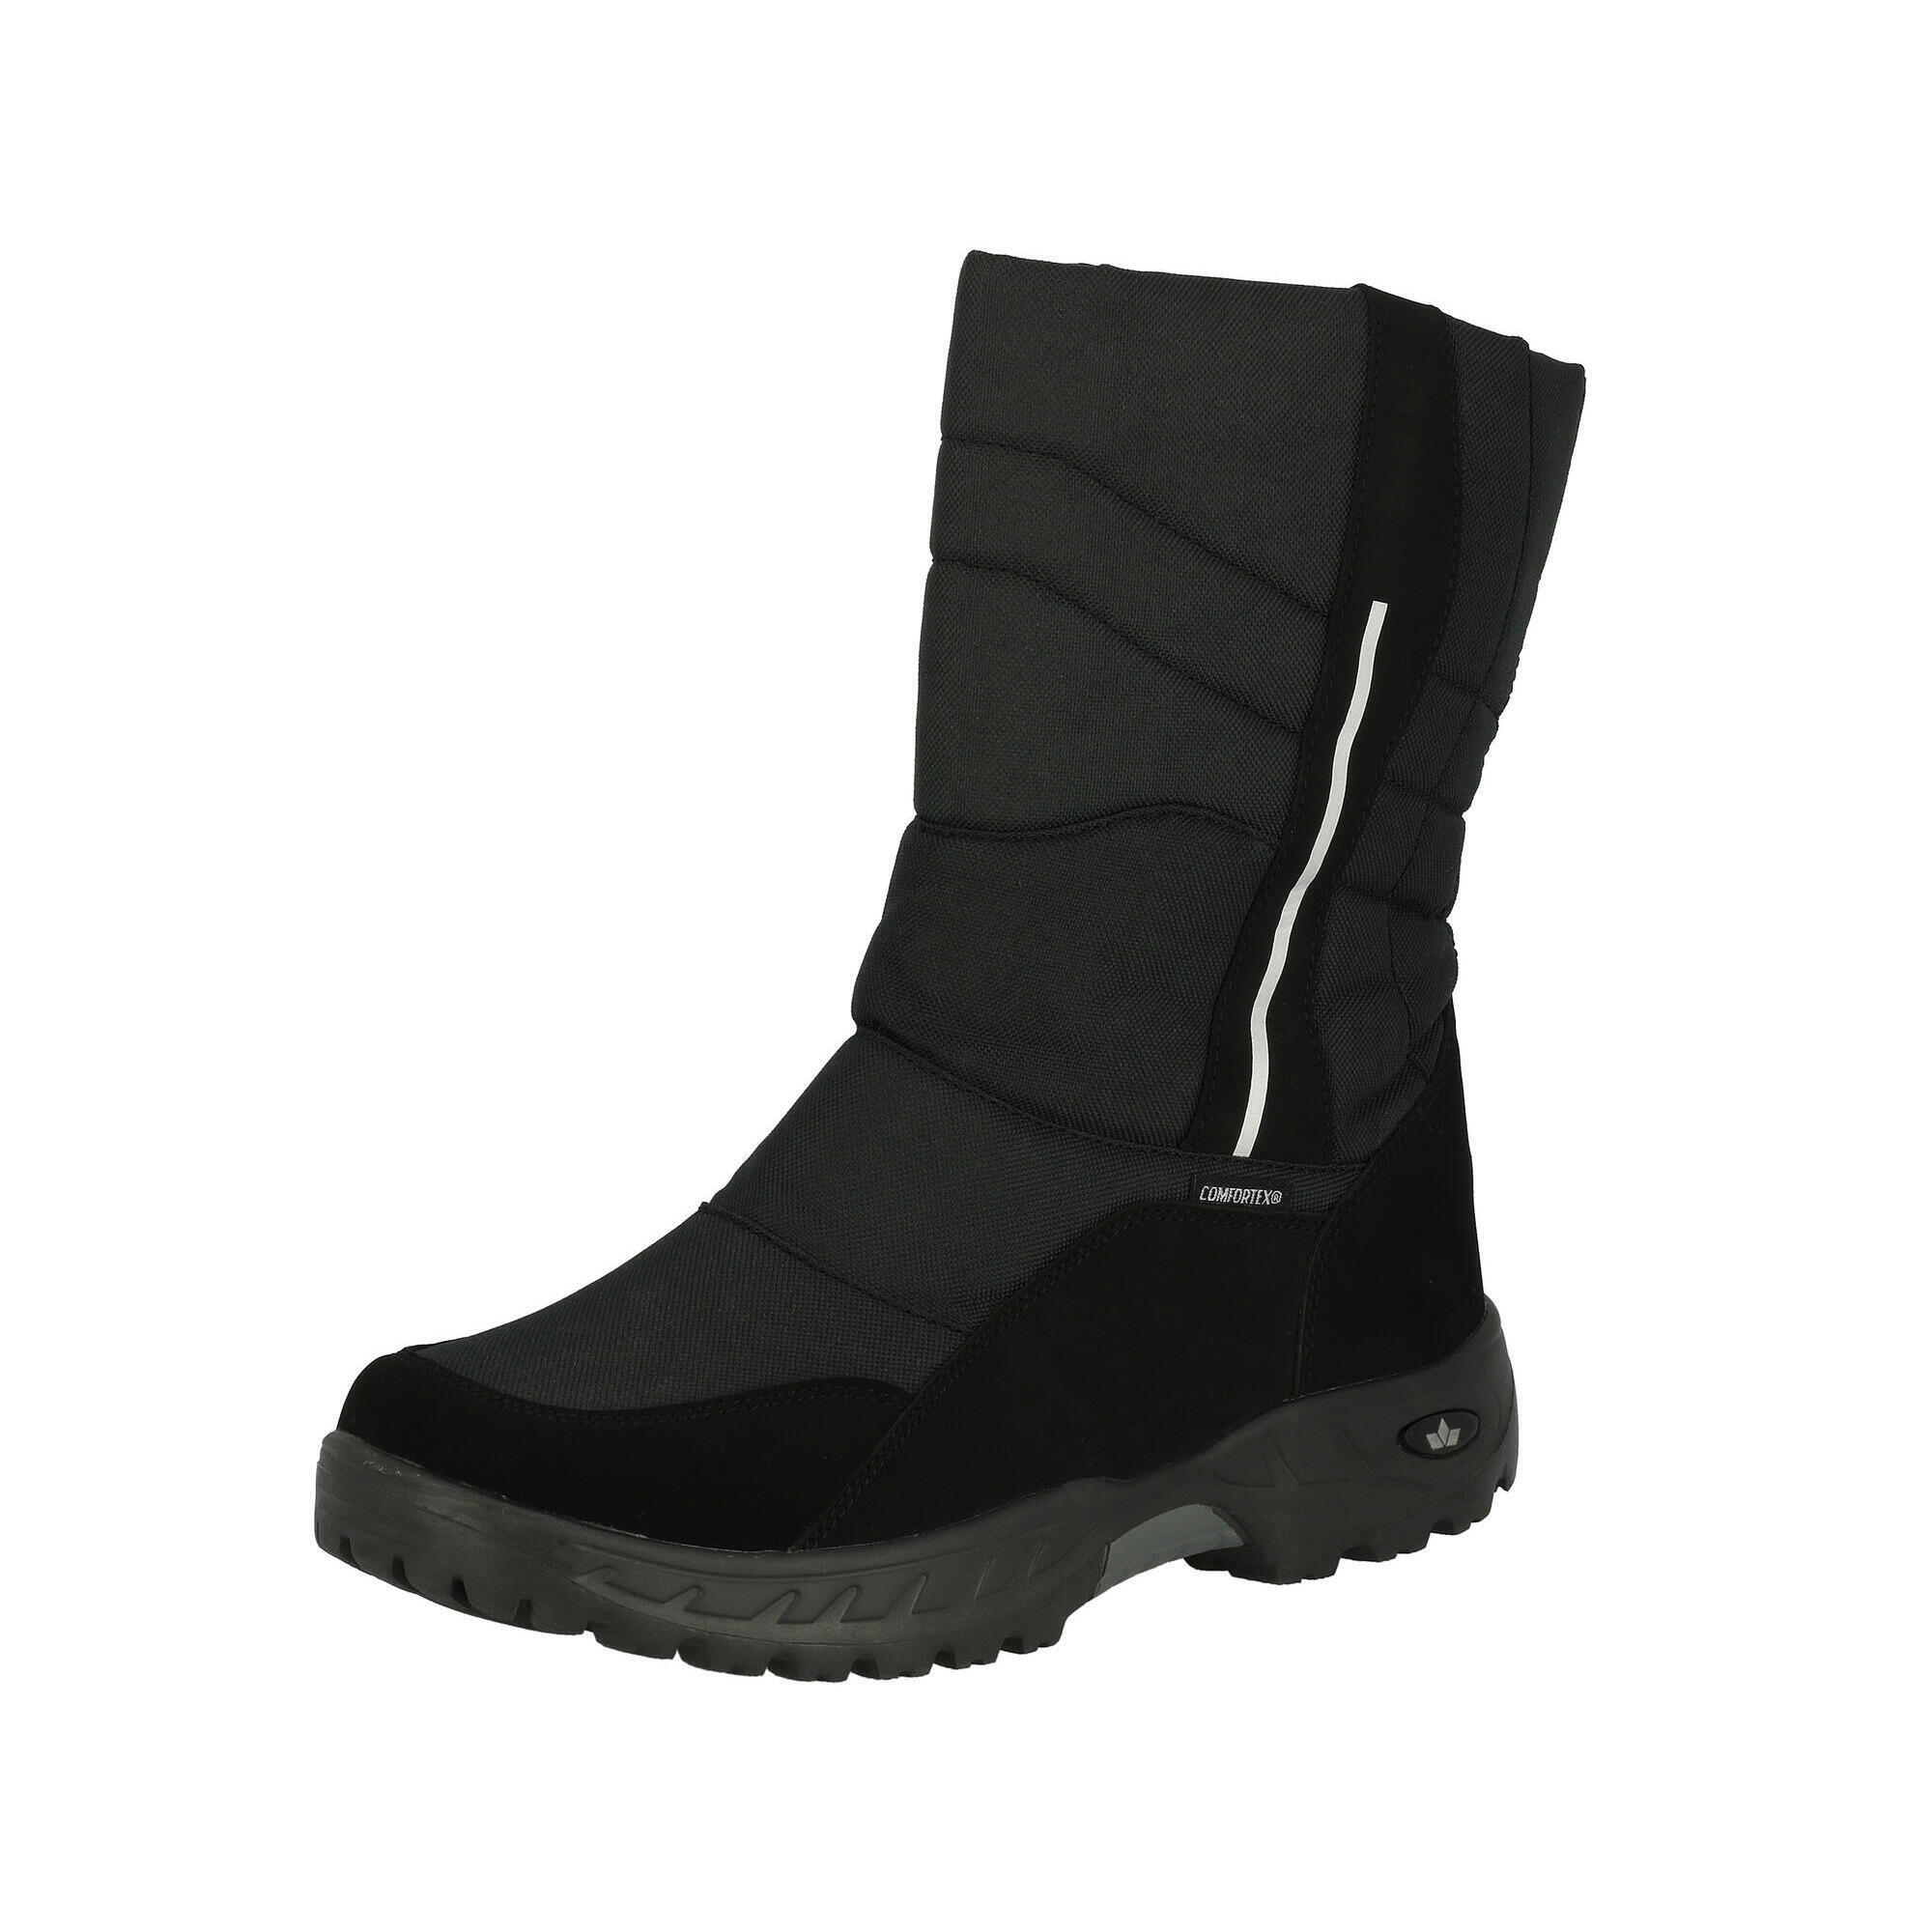 Ботинки зимние мужские Lico Ice Mount непромокаемые, черный jonny fire ботинки мужские зимние м797чп 41